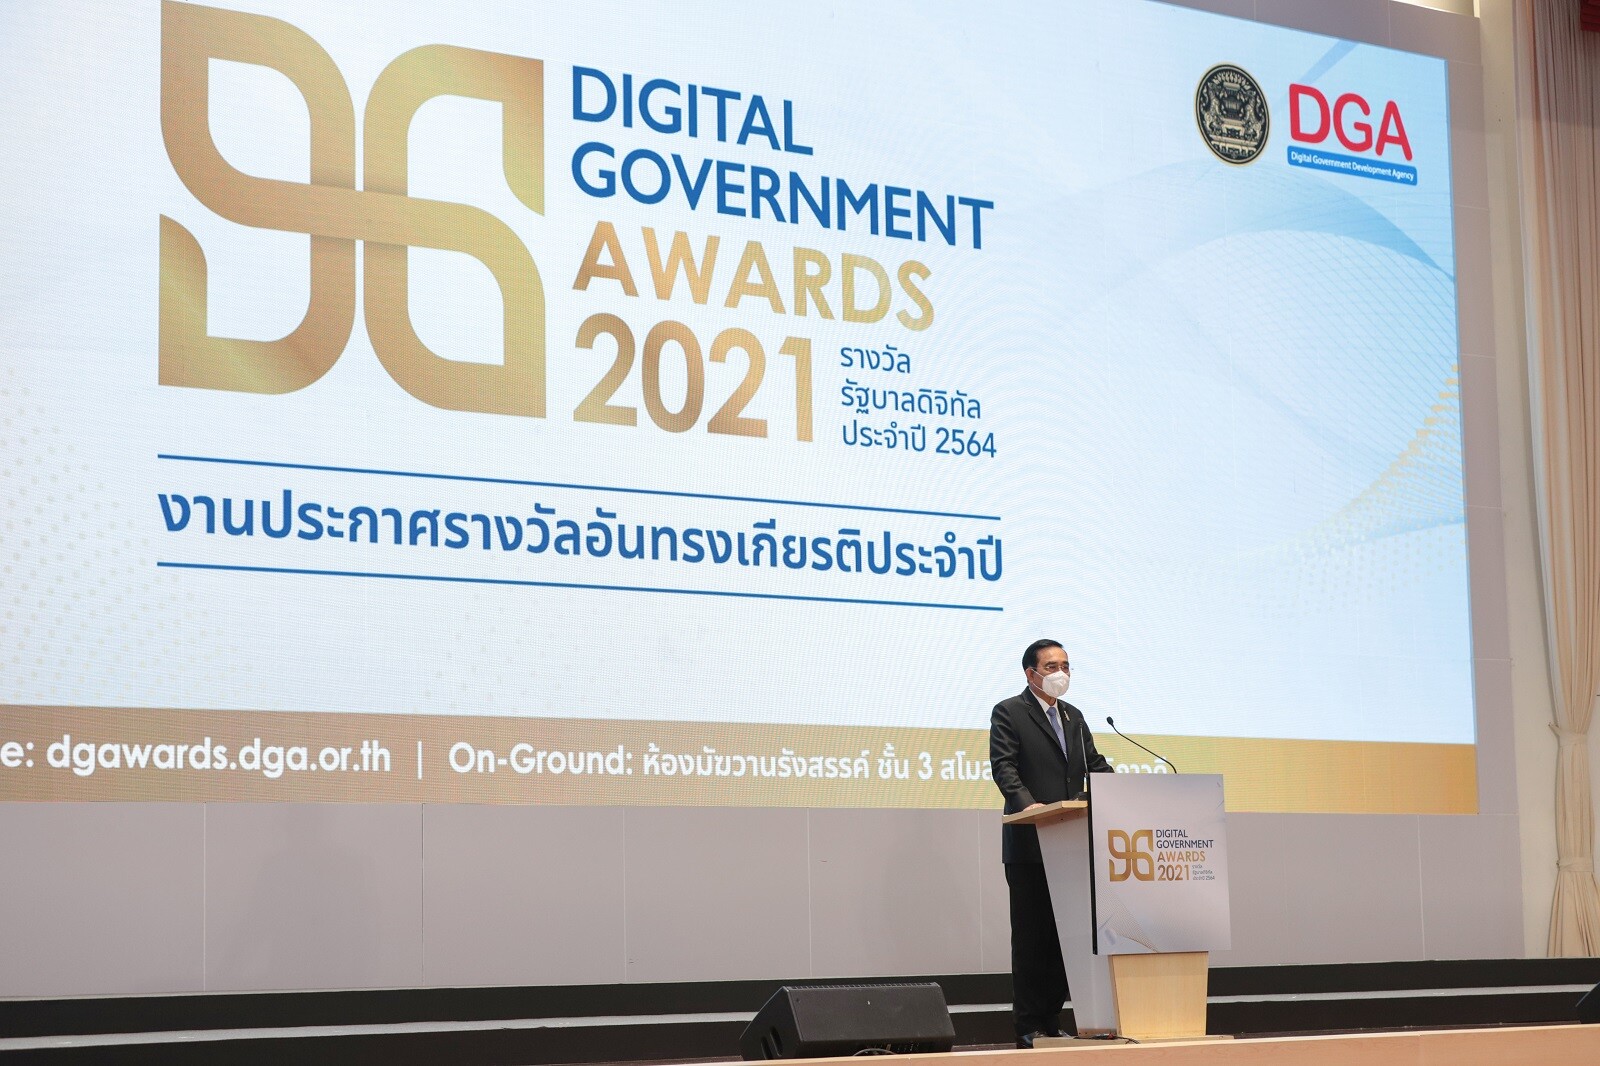 นายกรัฐมนตรีมอบรางวัลรัฐบาลดิจิทัลประจำปี 2564 "Digital Government Awards 2021" ย้ำ 3 แนวทางสำคัญมุ่งพัฒนารัฐบาลดิจิทัลด้าน 'ข้อมูล แพลตฟอร์มกลาง พัฒนาบุคลากรภาครัฐ' อำนวยความสะดวกประชาชนเข้าถึงบริการภาครัฐแบบครบวงจรในอนาคต